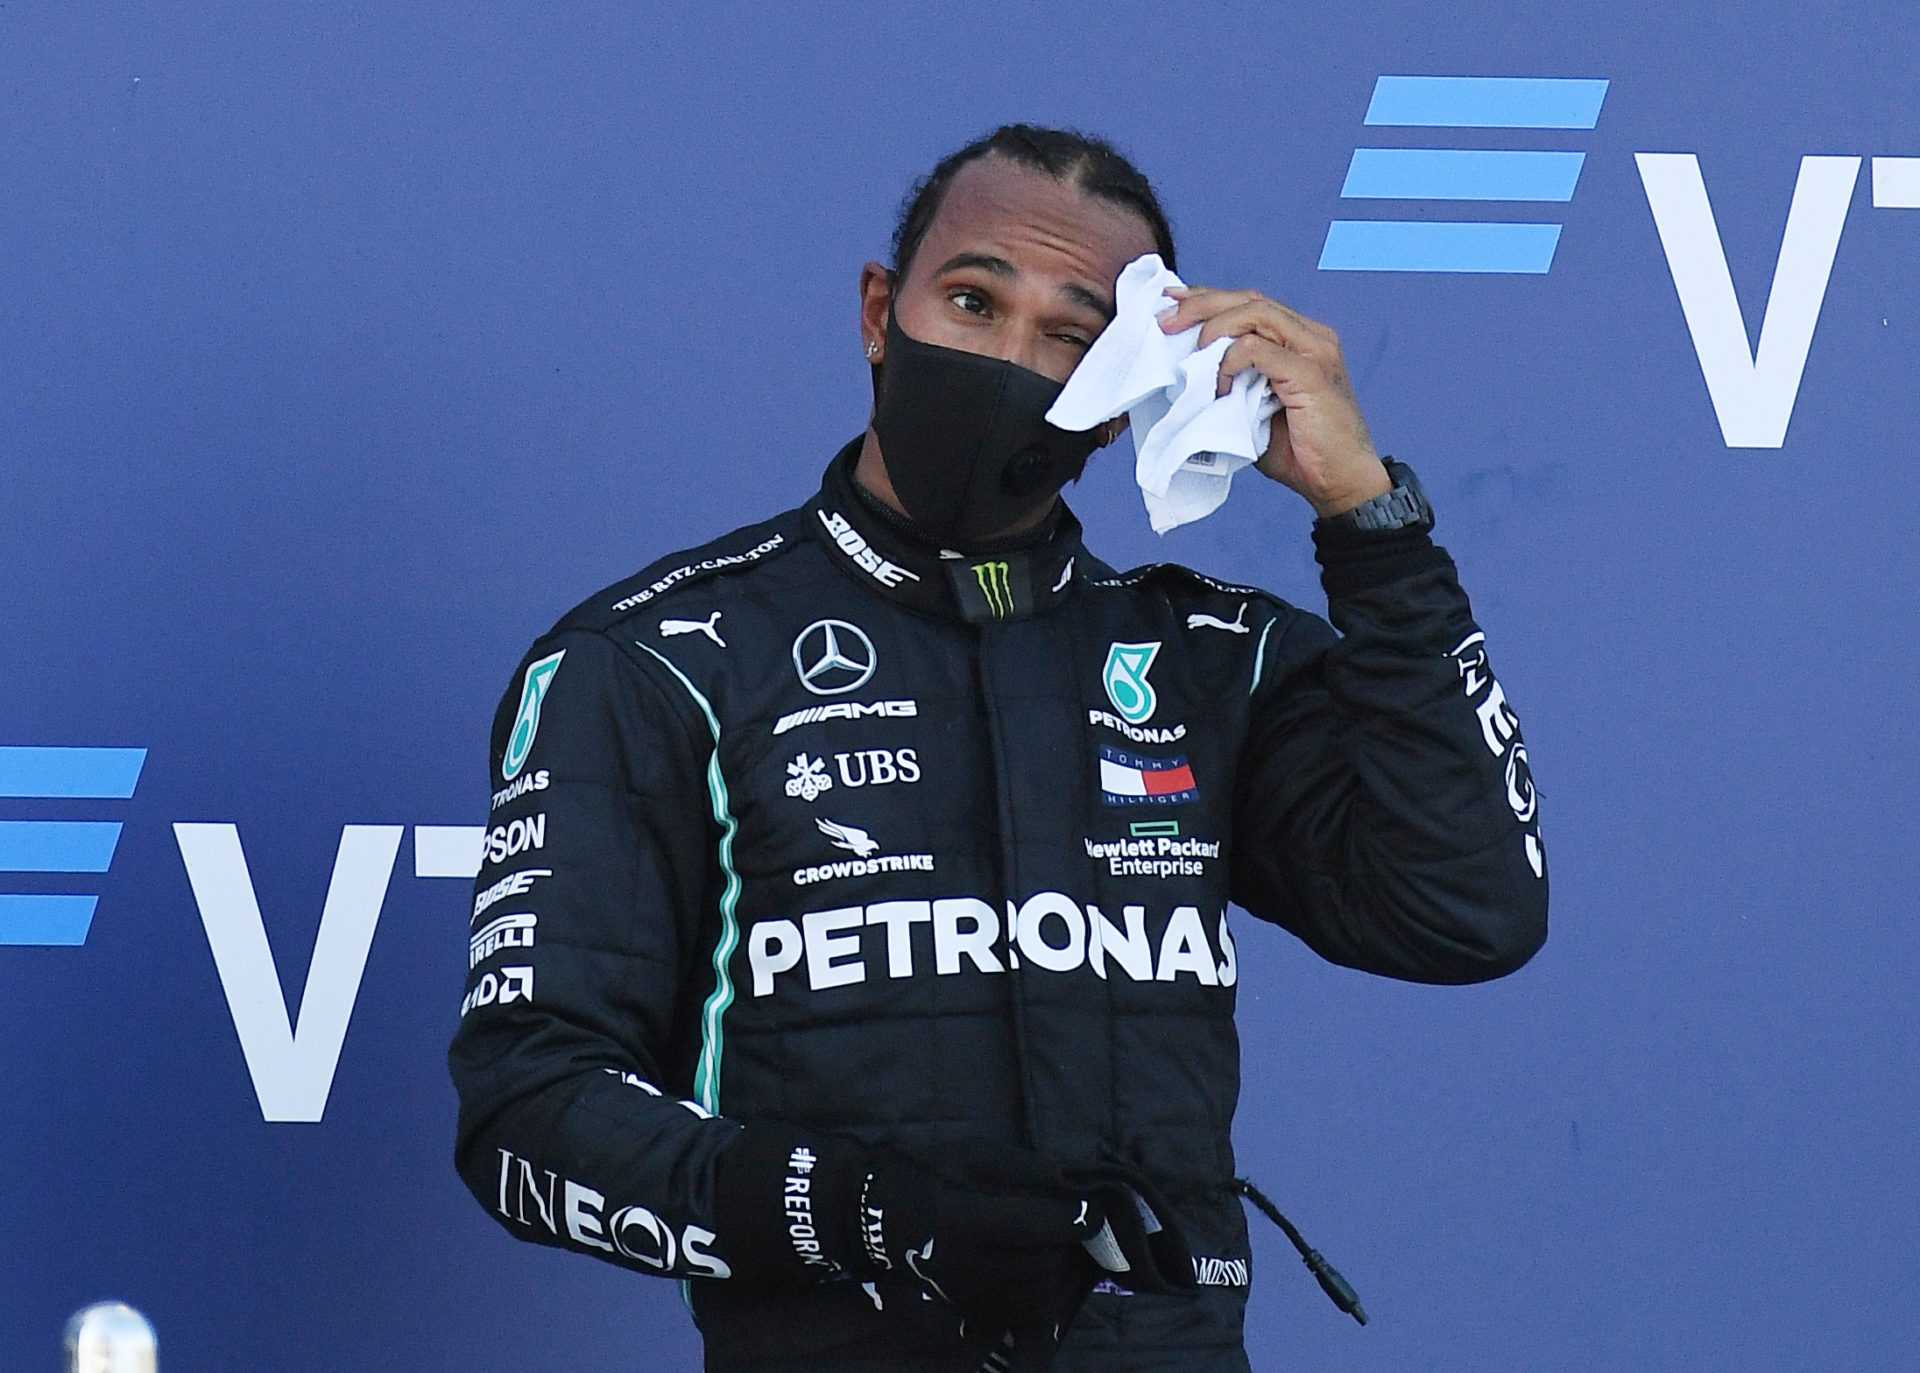 La radio de l'équipe révèle que Mercedes a donné à Lewis Hamilton le coup de pouce pour un début d'entraînement illégal